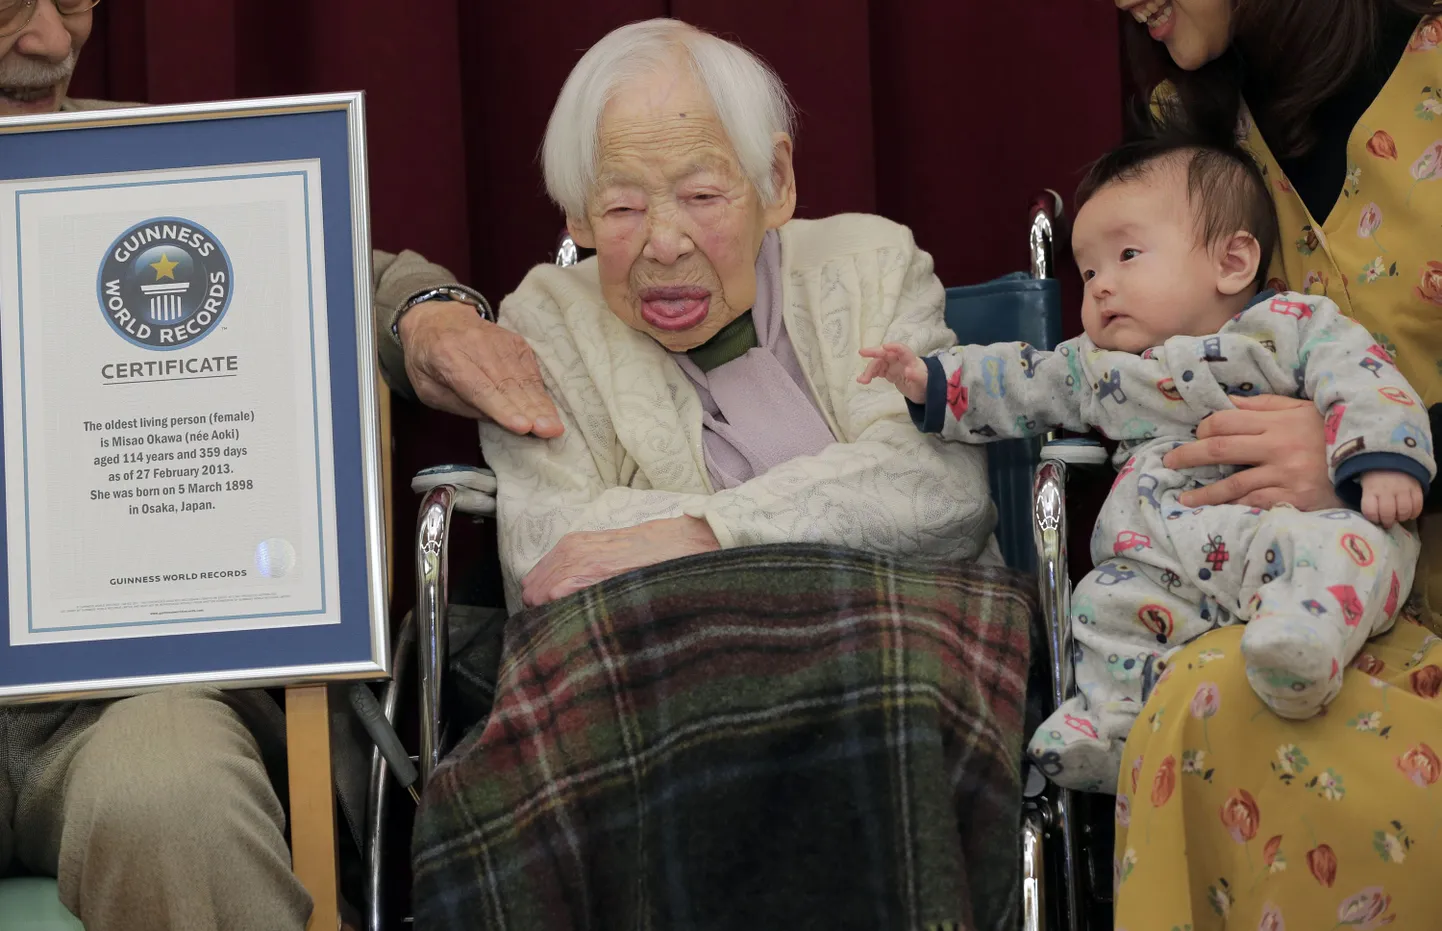 114-aastane Misao Okawa koos kahekuuse lapselapselapsega Hibiki Okawaga ning Guinnessi rekordite raamatu sertifikaadiga Osaka hooldekodus.